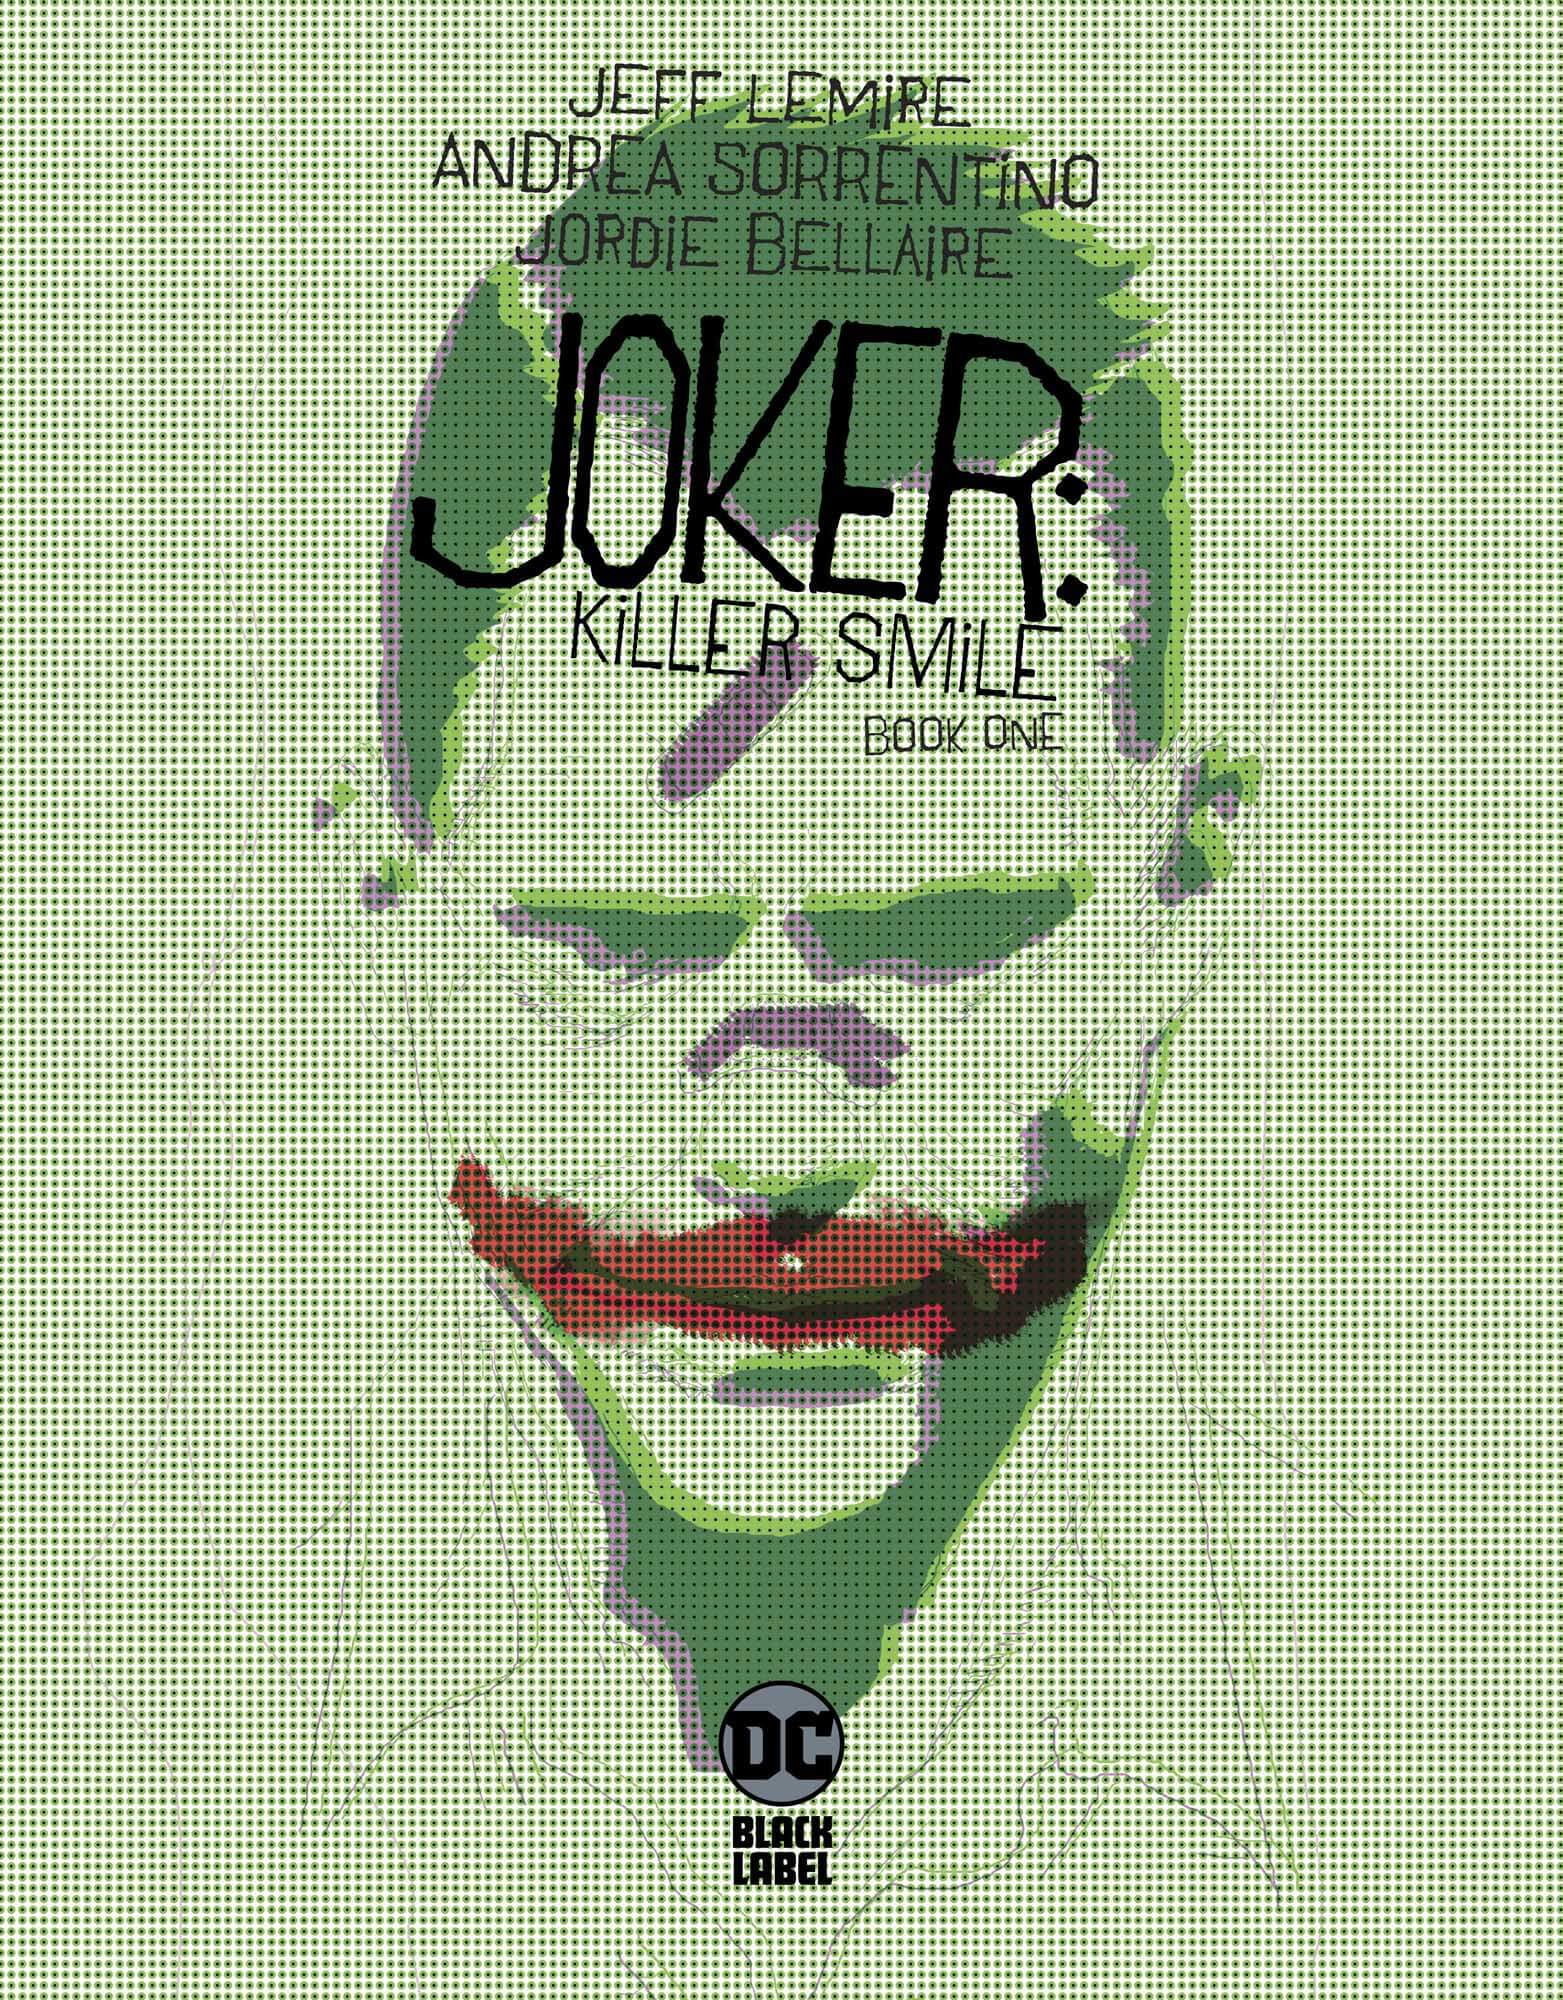 joker killer